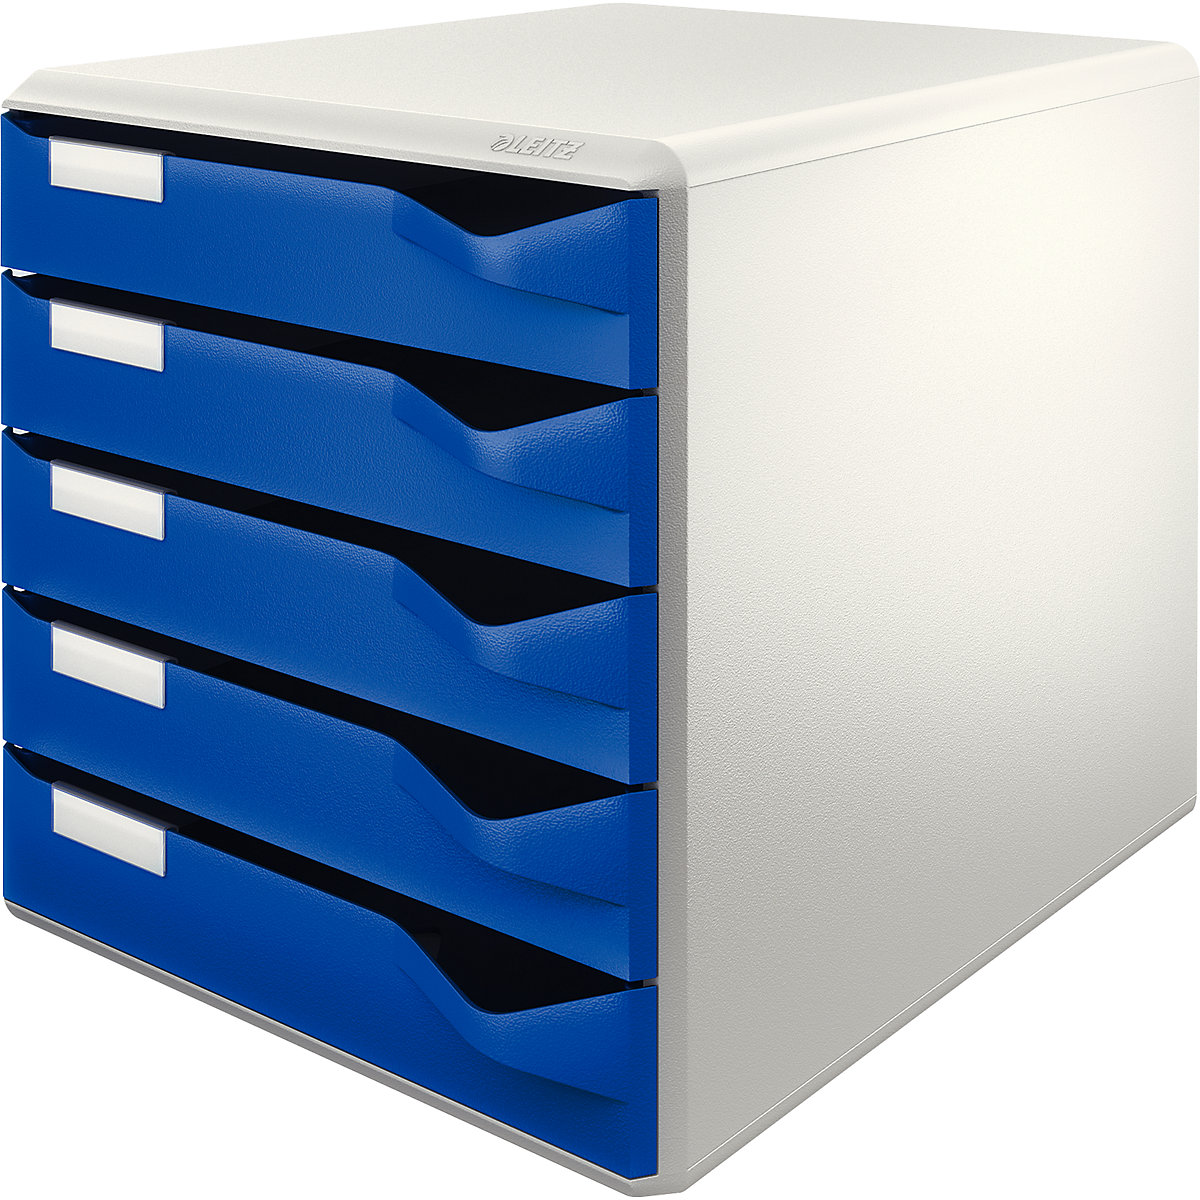 Leitz Ablagebox, Post- und Formular-Set, Gehäuse grau, Schubladen blau, 5 Schubladen